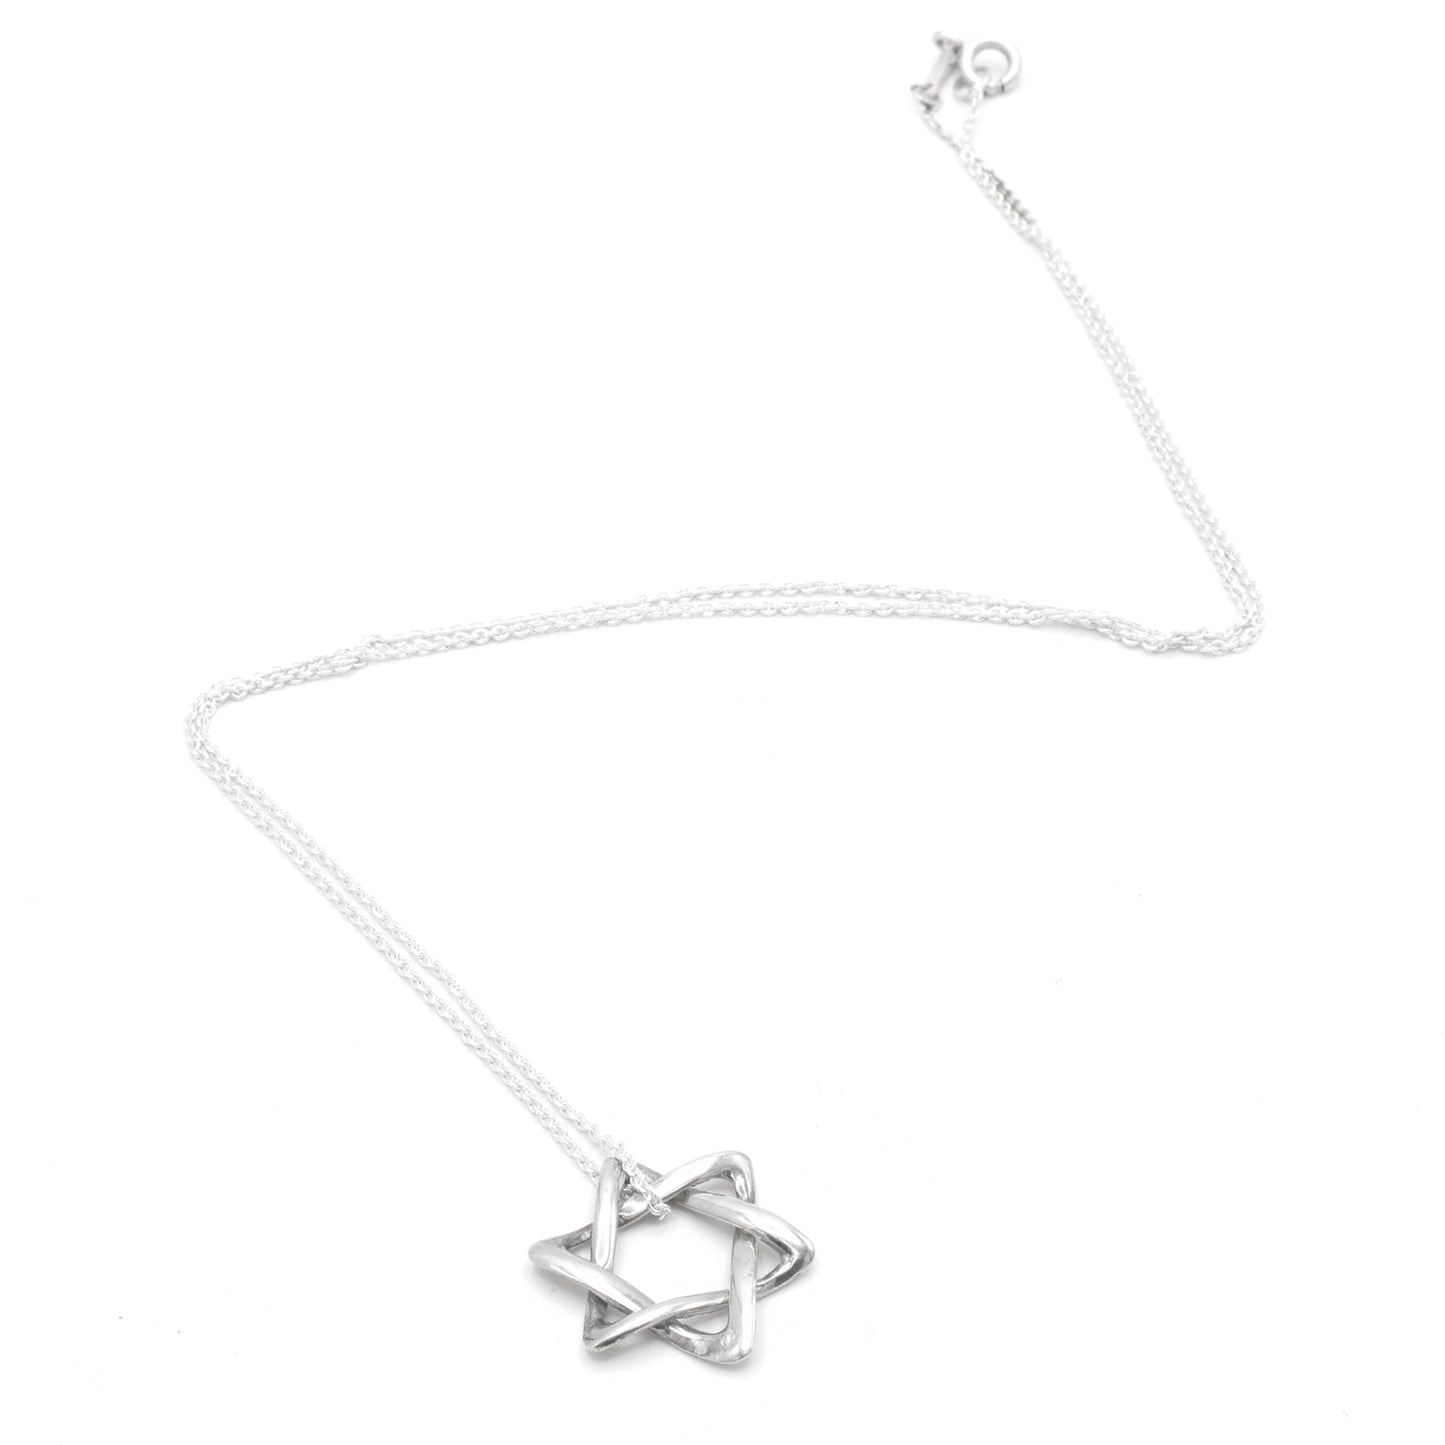 Tiffany & Co David Star necklace